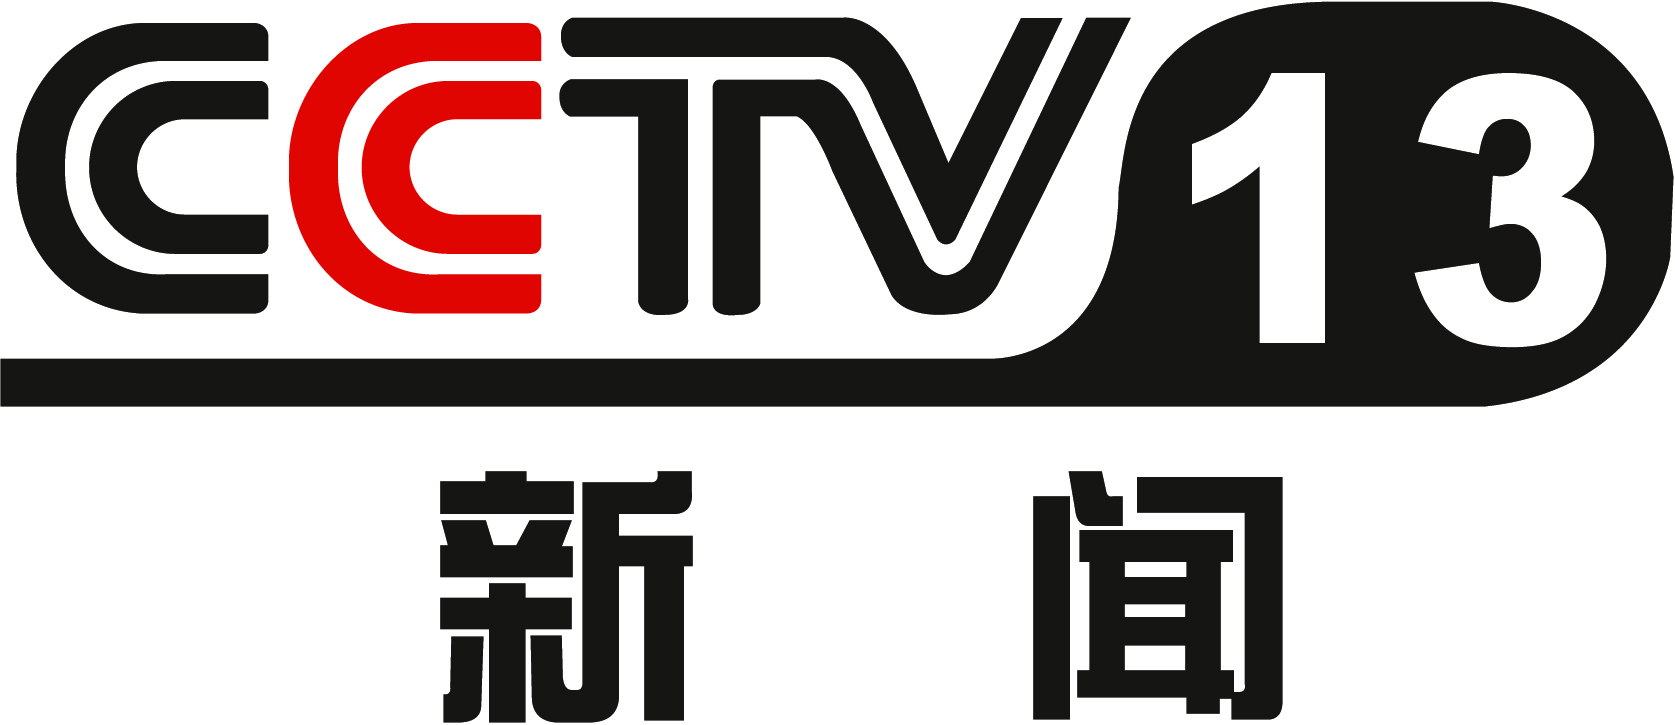 -央视新闻CCTV13